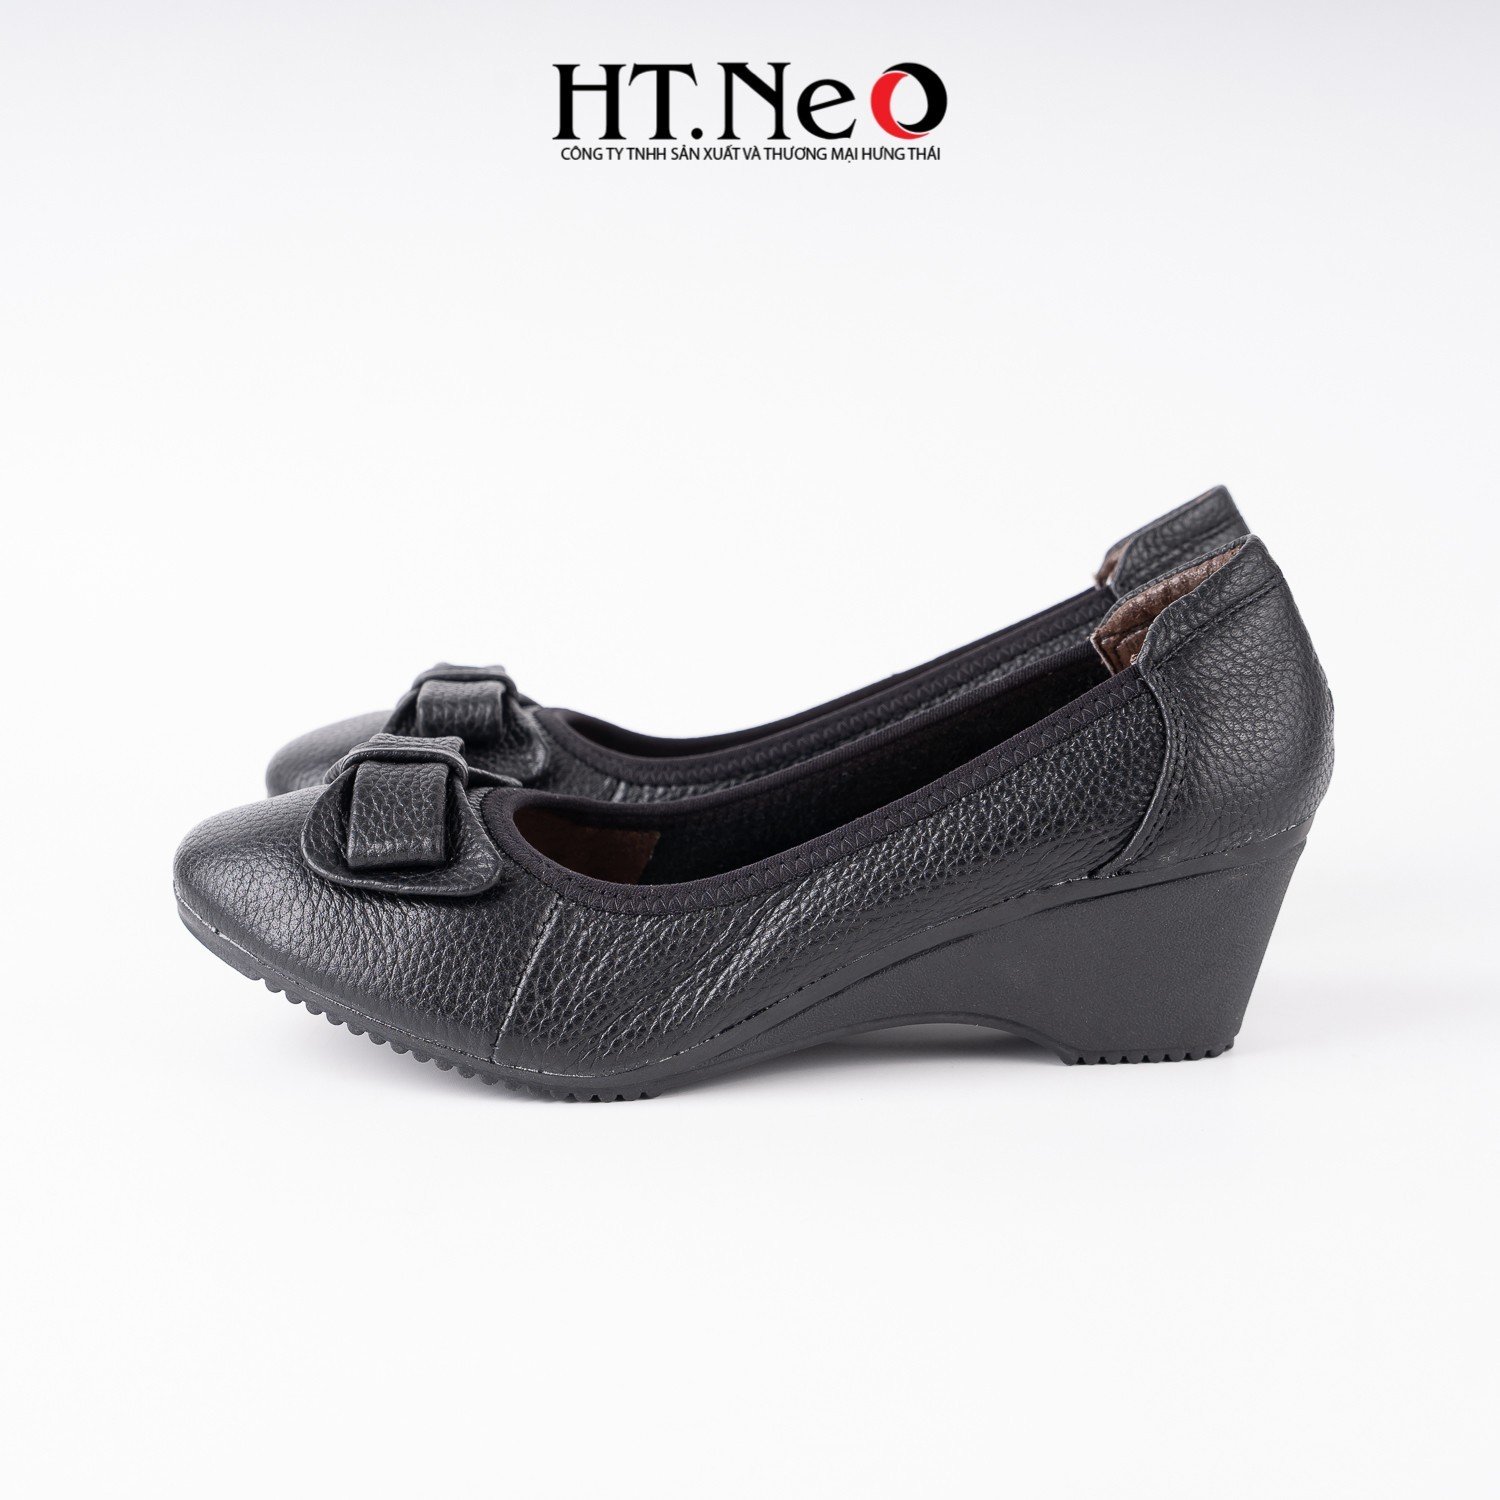 Giày nữ, giày đế xuồng 3p được thiết kế với da sần, viền chung, được tổ điểm thêm chiếc nơ xinh xắn trên đôi giày NU91